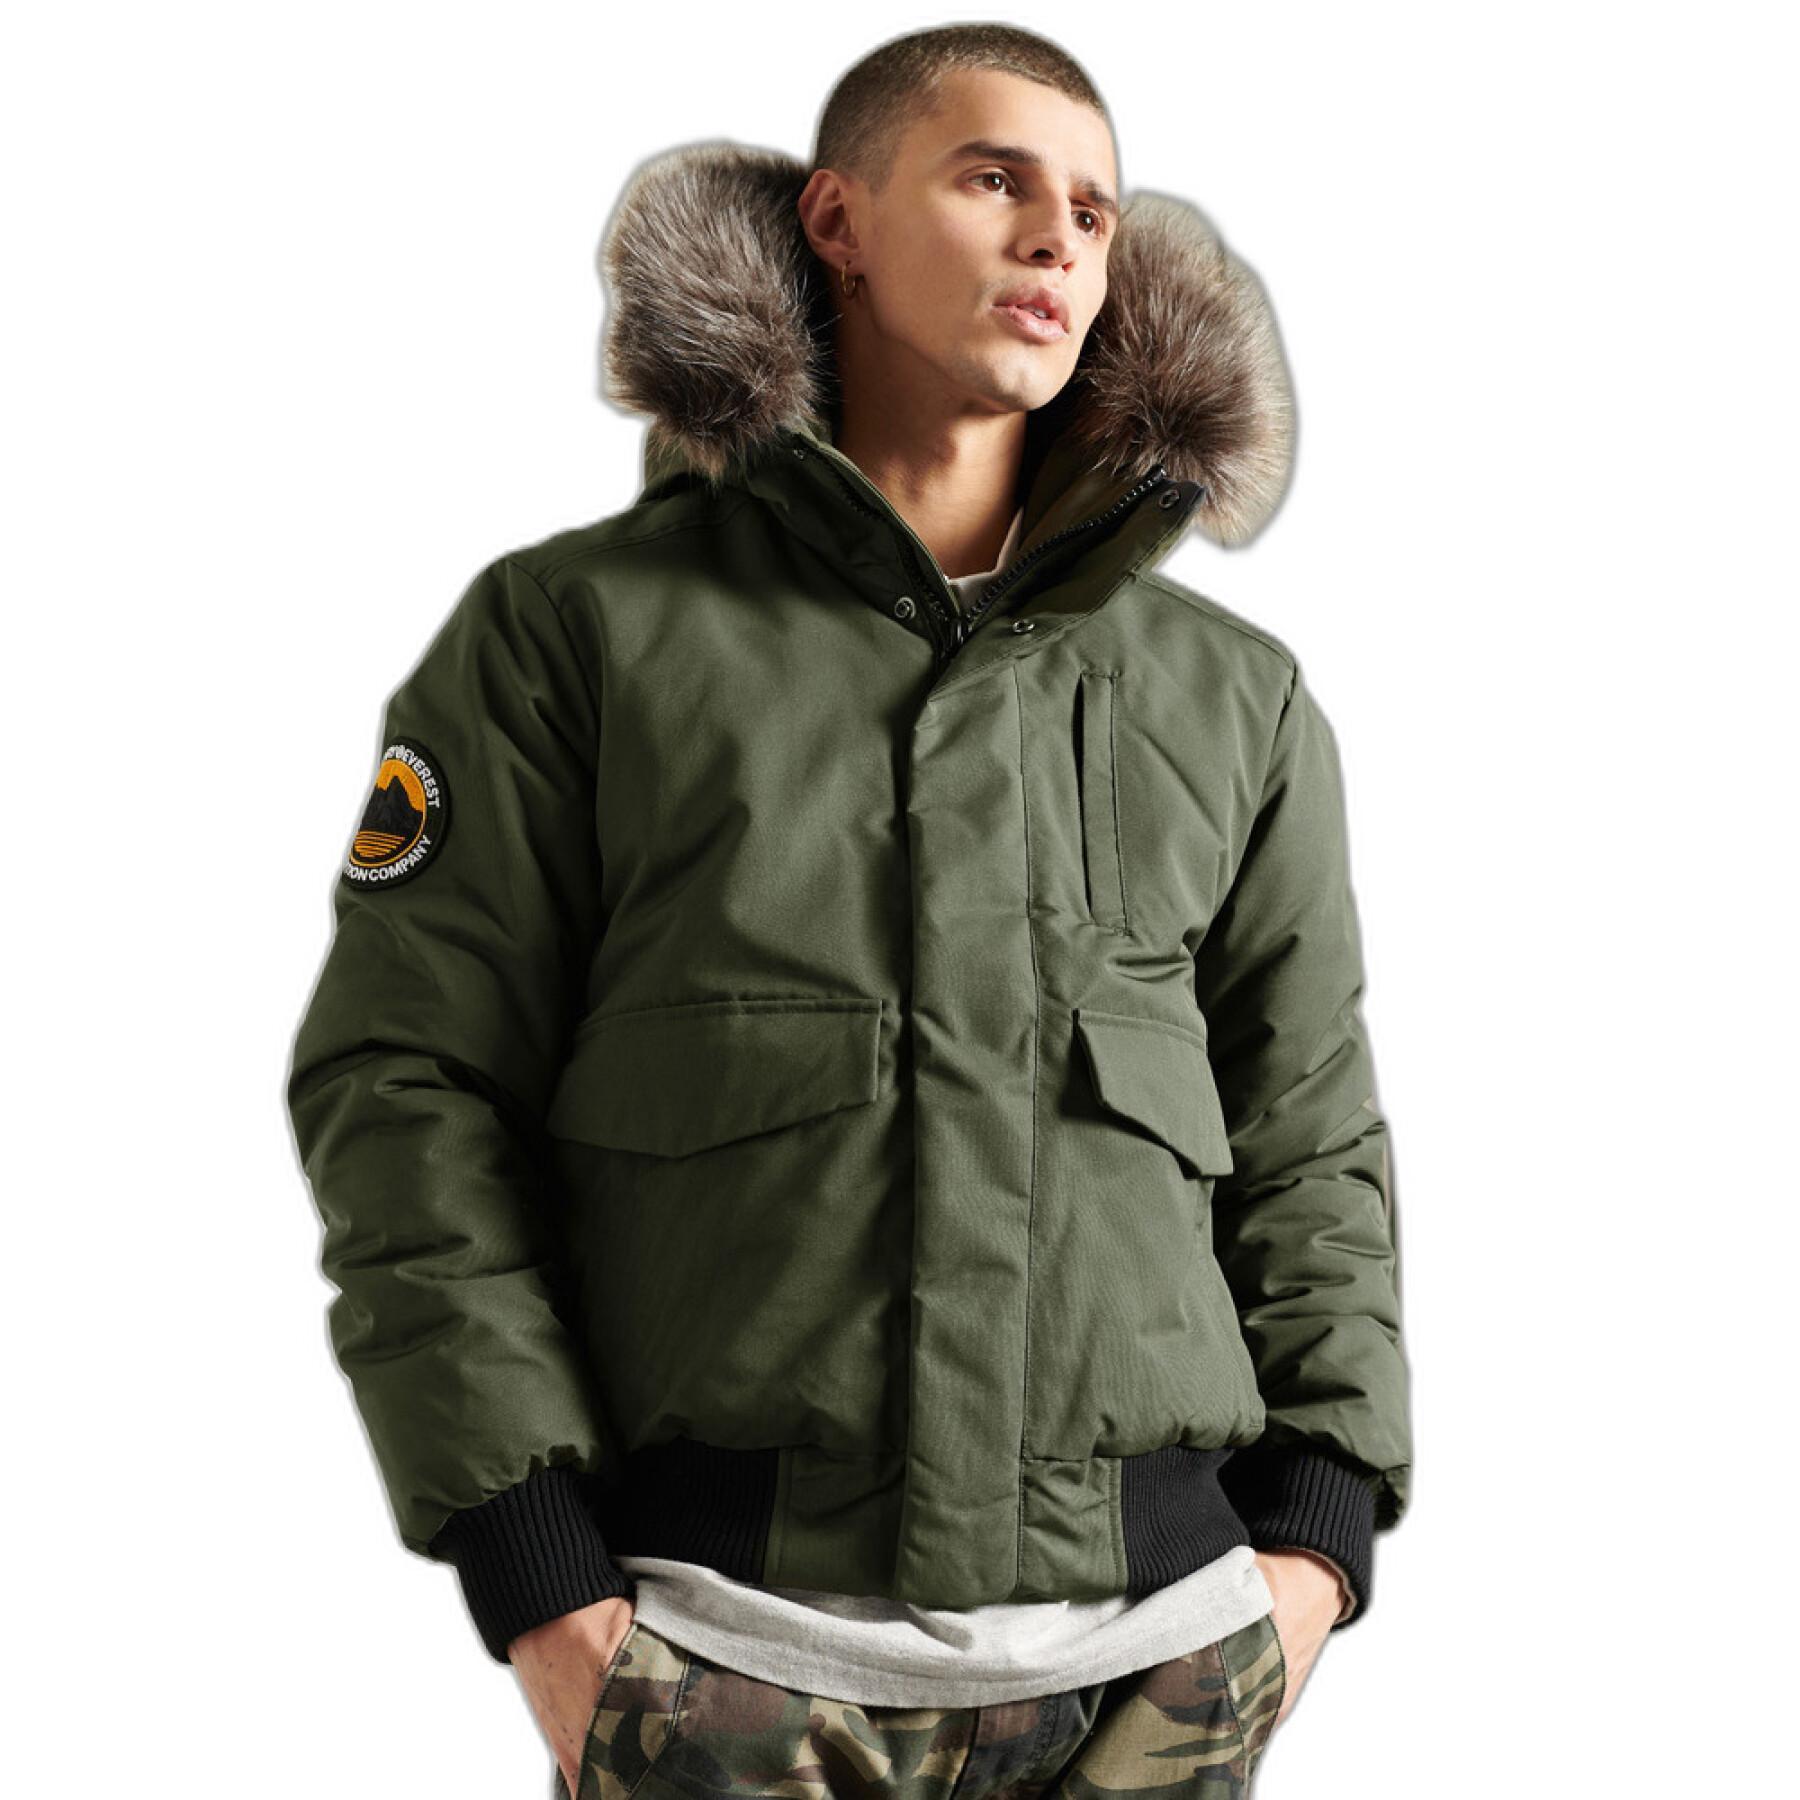 Chaqueta Superdry Everest - Abrigos y chaquetas - Hombre - Lifestyle